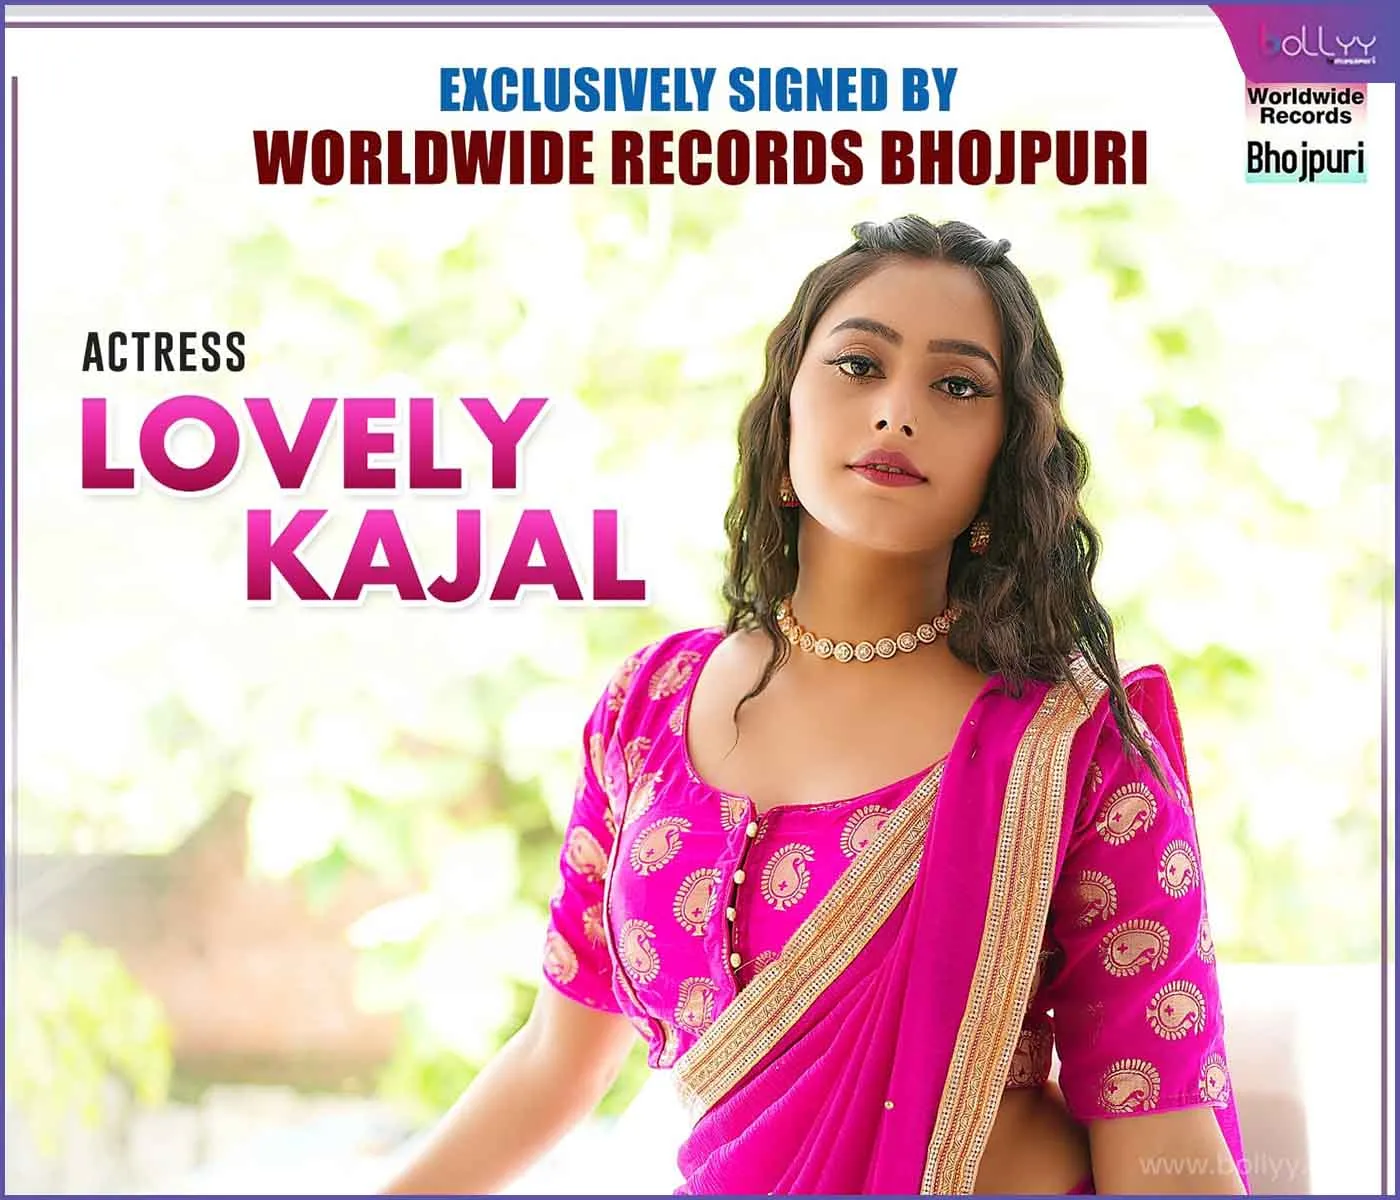 Lovely Kajal's entry in Worldwide Records